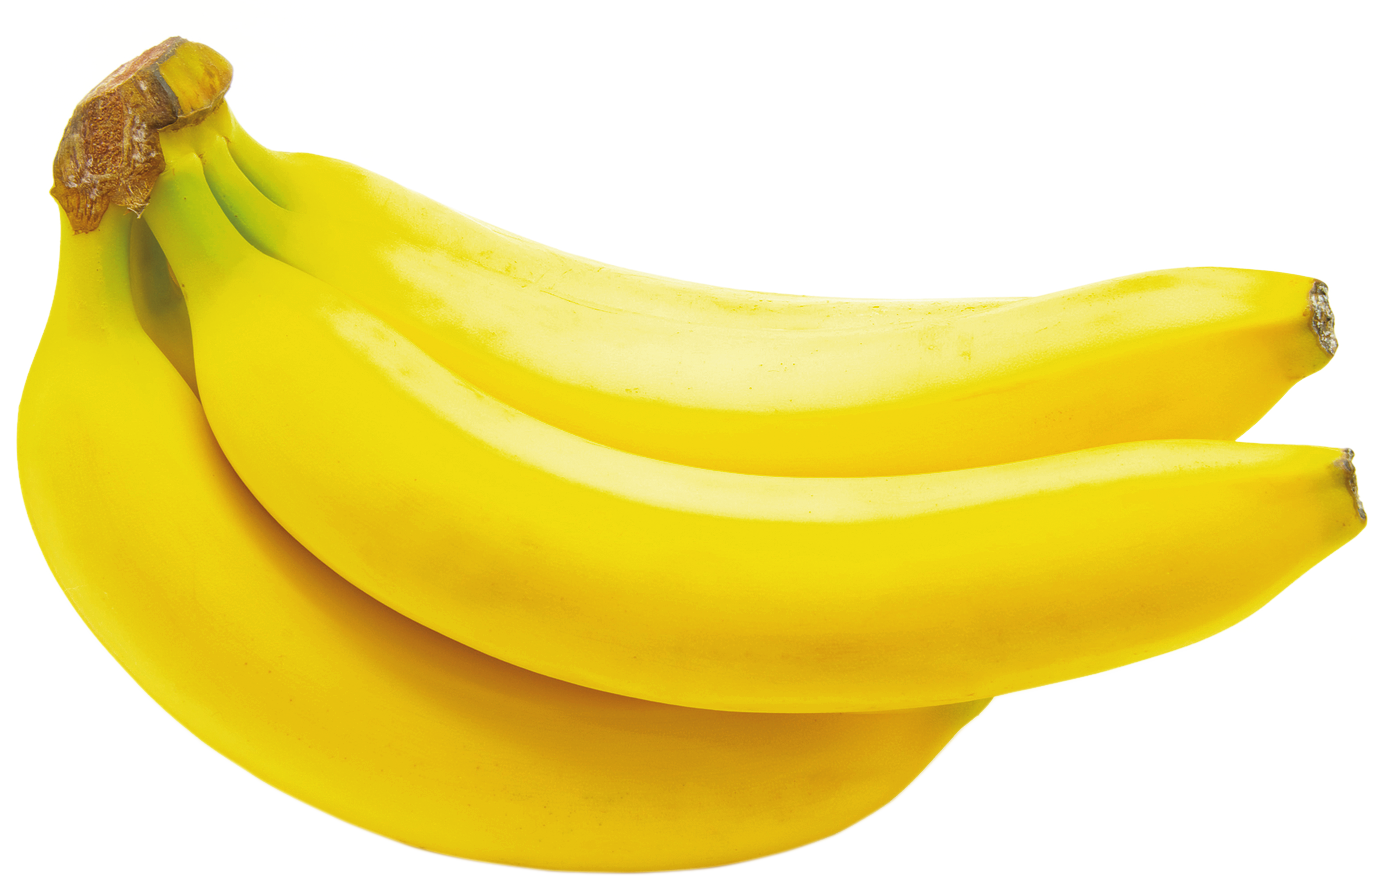 Banana PNG - 7368